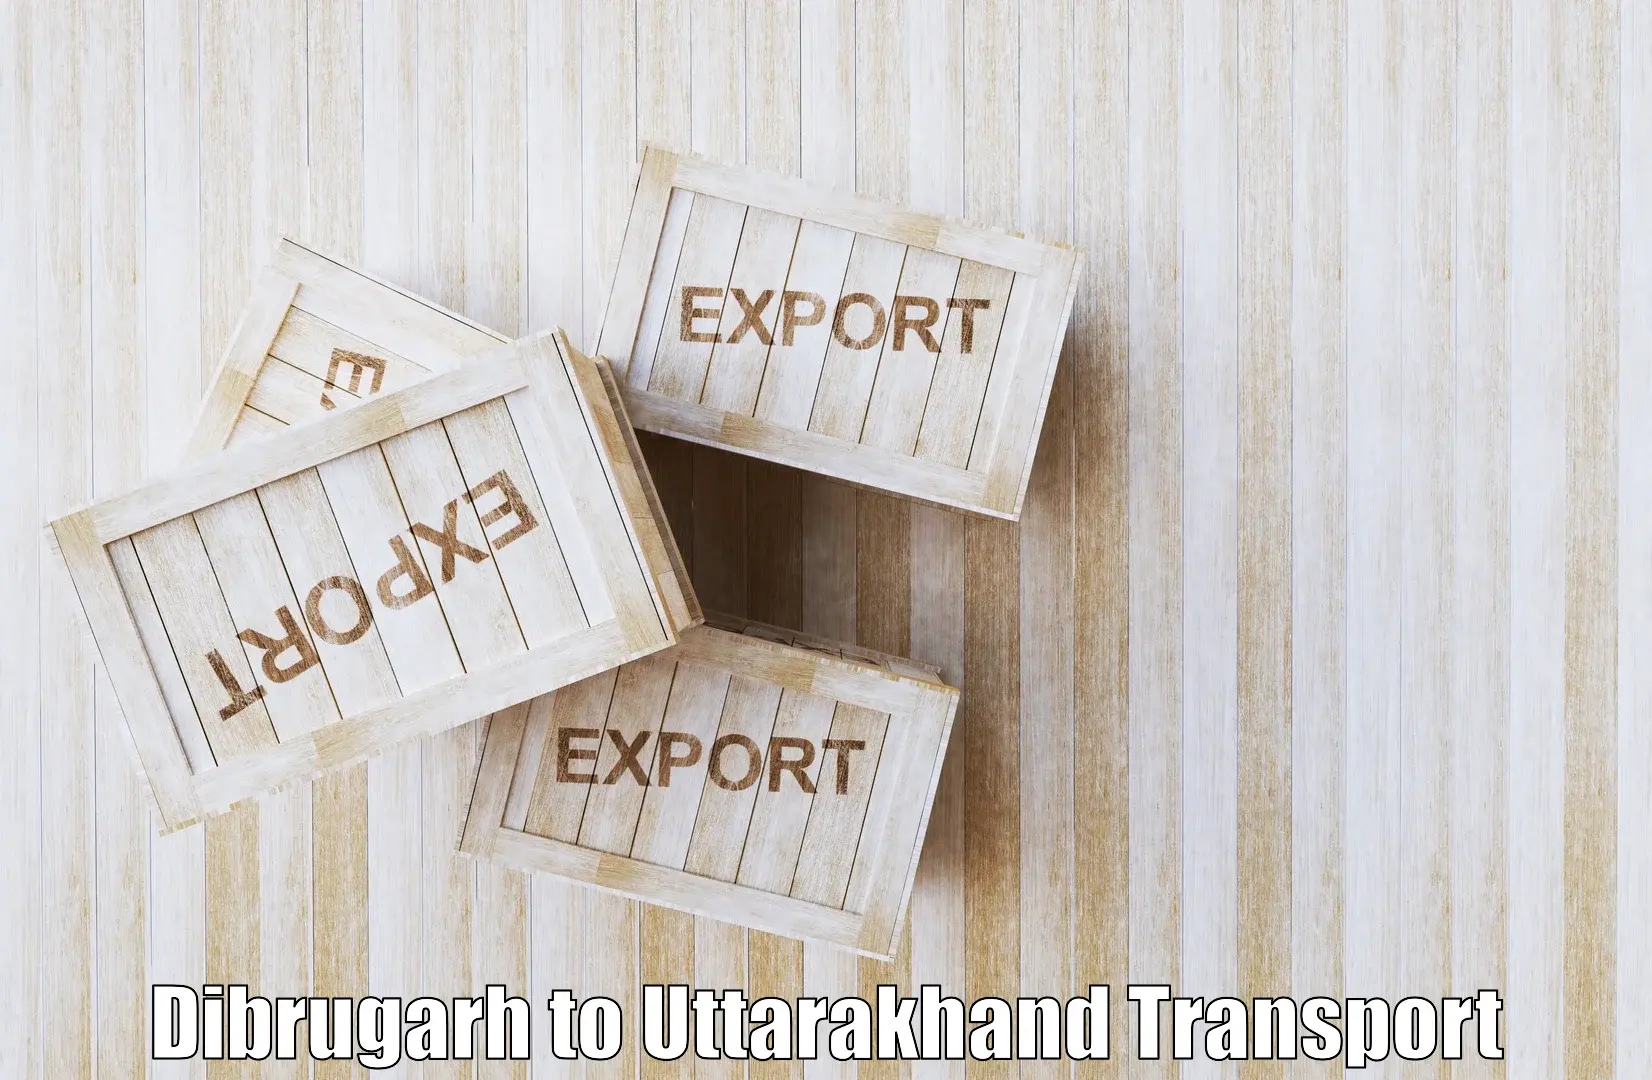 Road transport online services Dibrugarh to Sitarganj